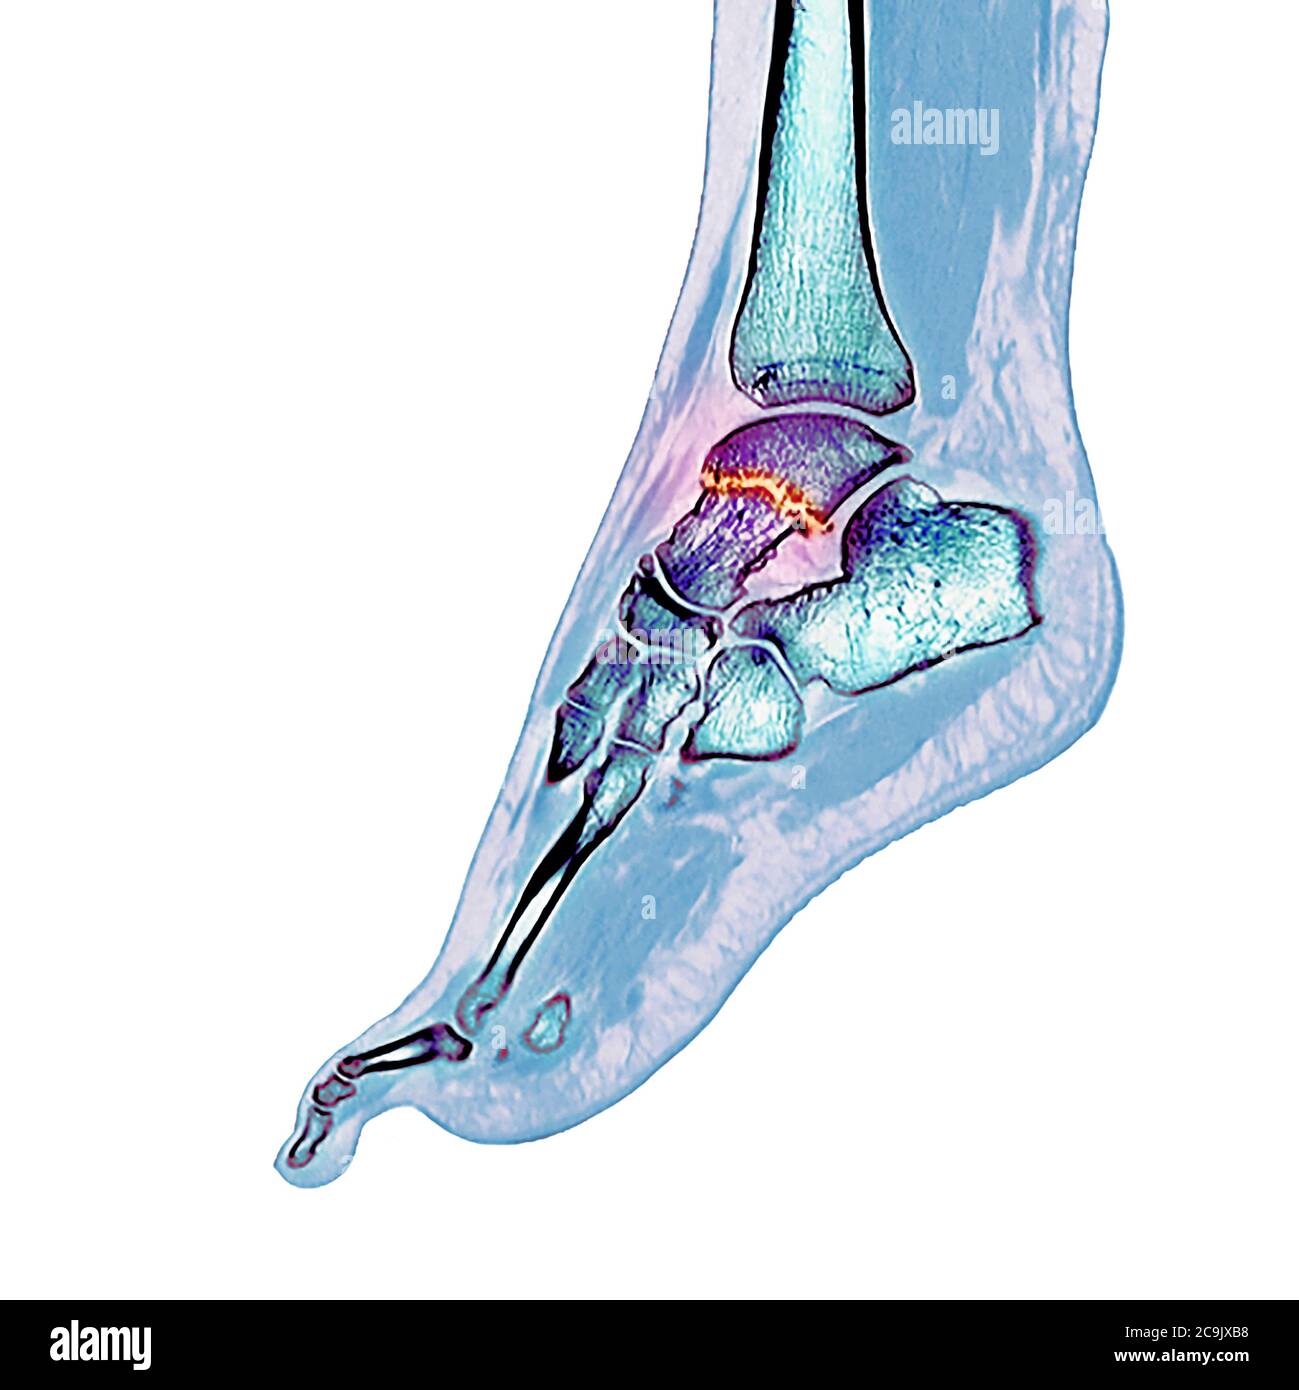 Fracture de l'os de la cheville. Tomodensitométrie colorée (CT) des os du pied et de la cheville d'une femme de 23 ans avec une comminée (fracturée) Banque D'Images